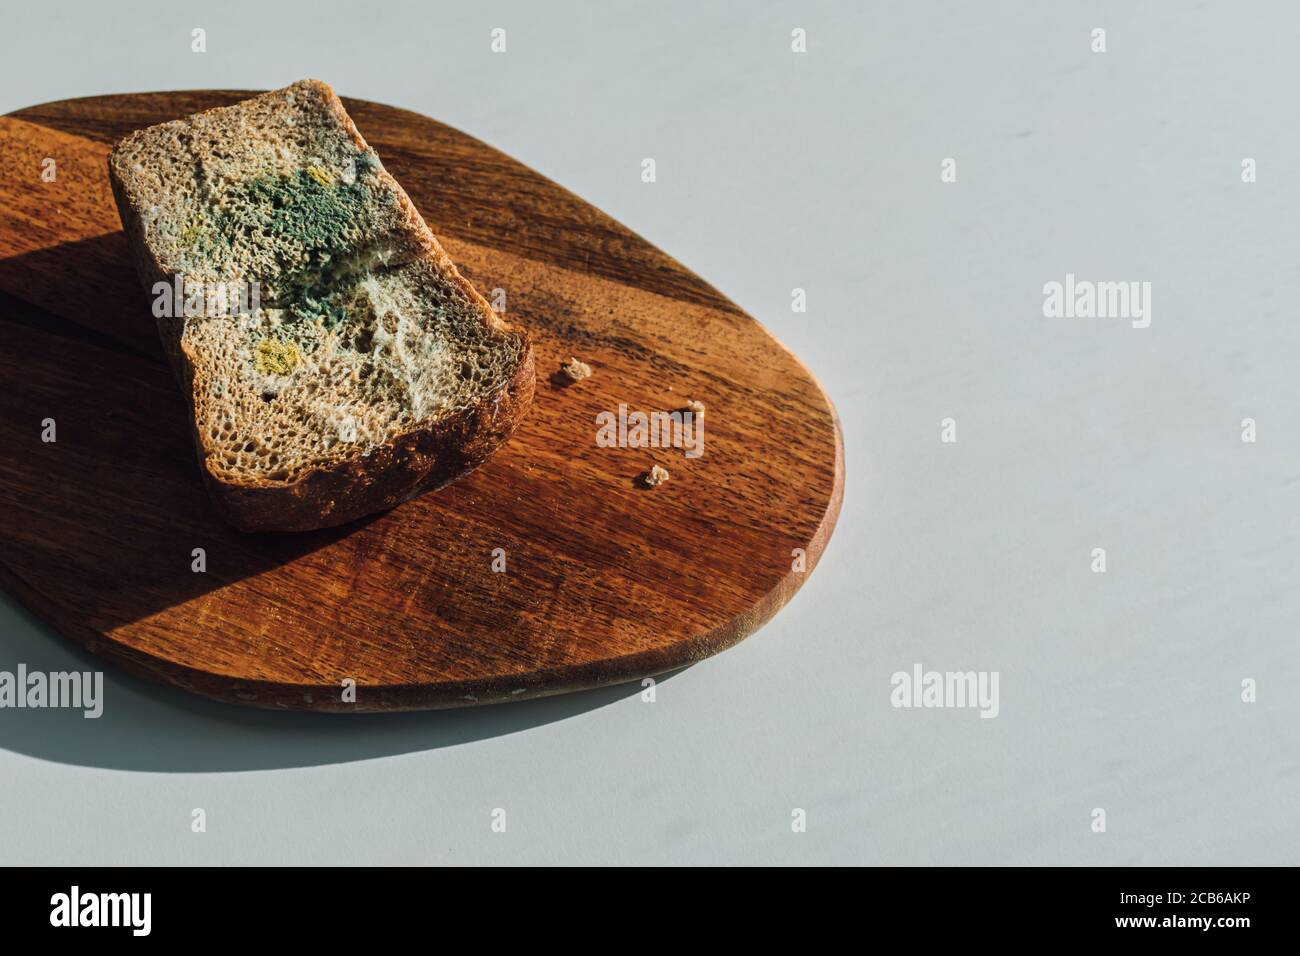 Moule sur pain, un morceau de pain de seigle avec moule blanc et vert sur une planche à découper en bois. La date du meilleur avant a expiré. Banque D'Images